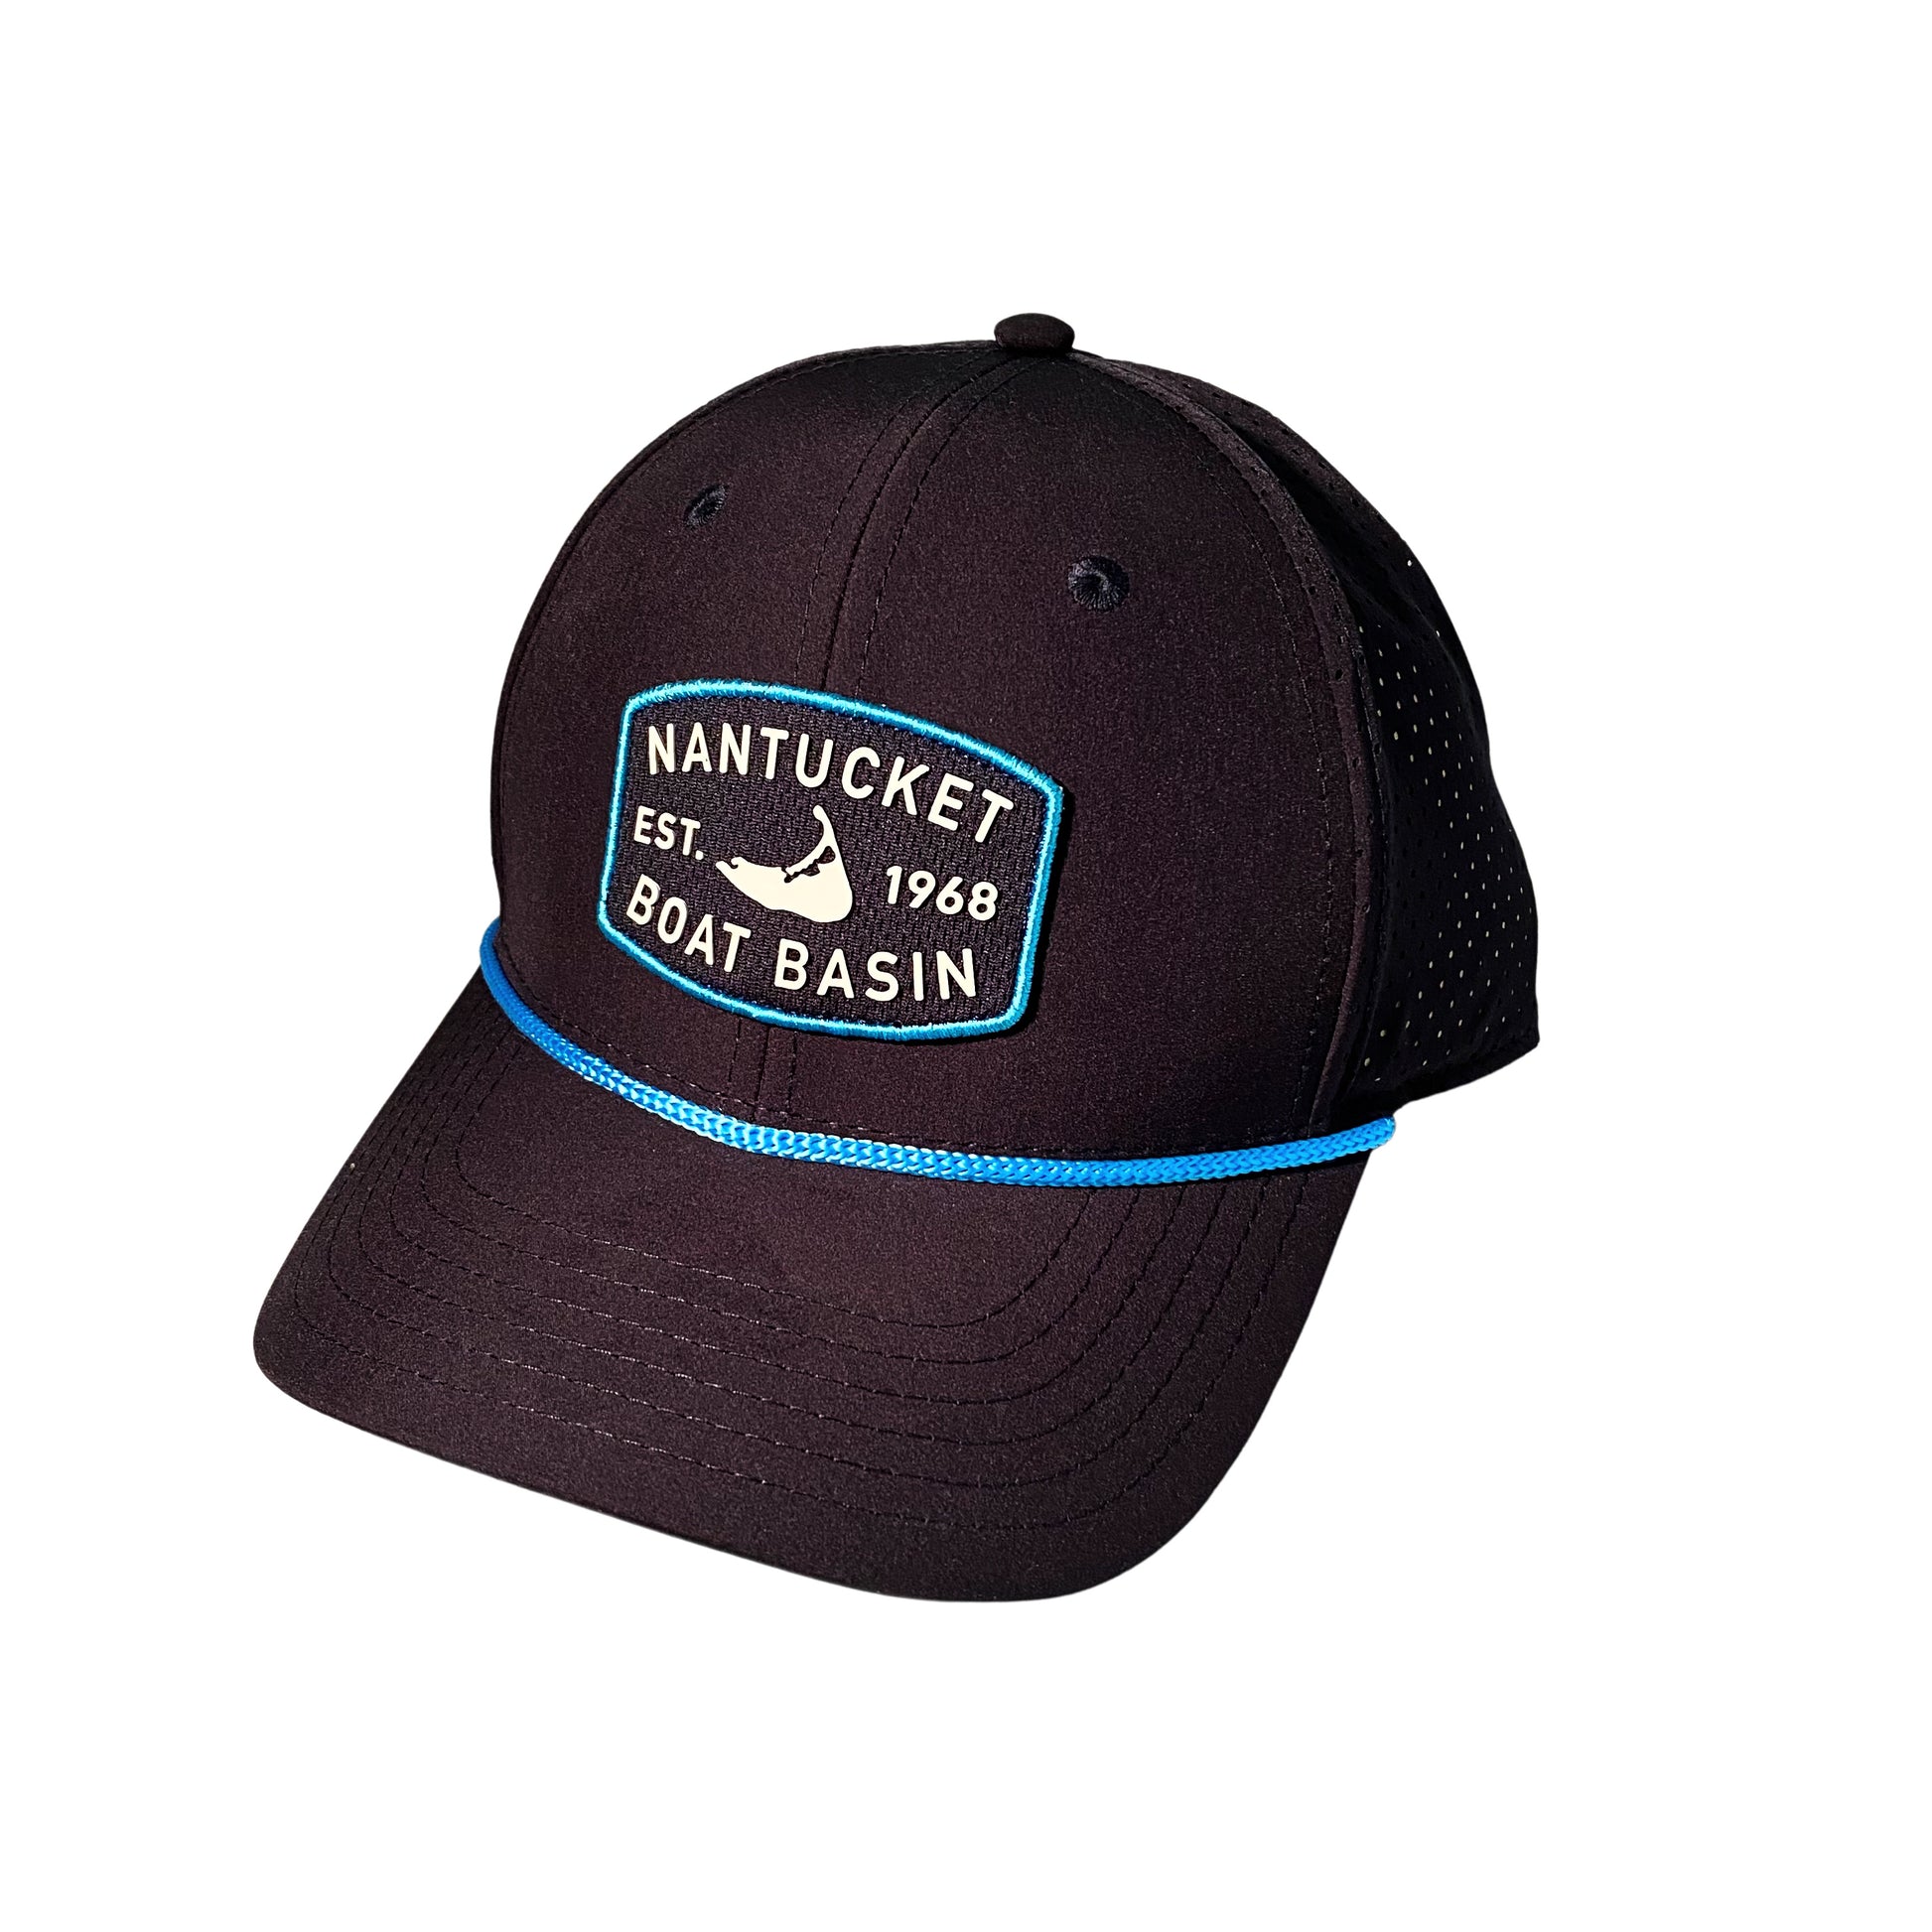 navy nantucket hat